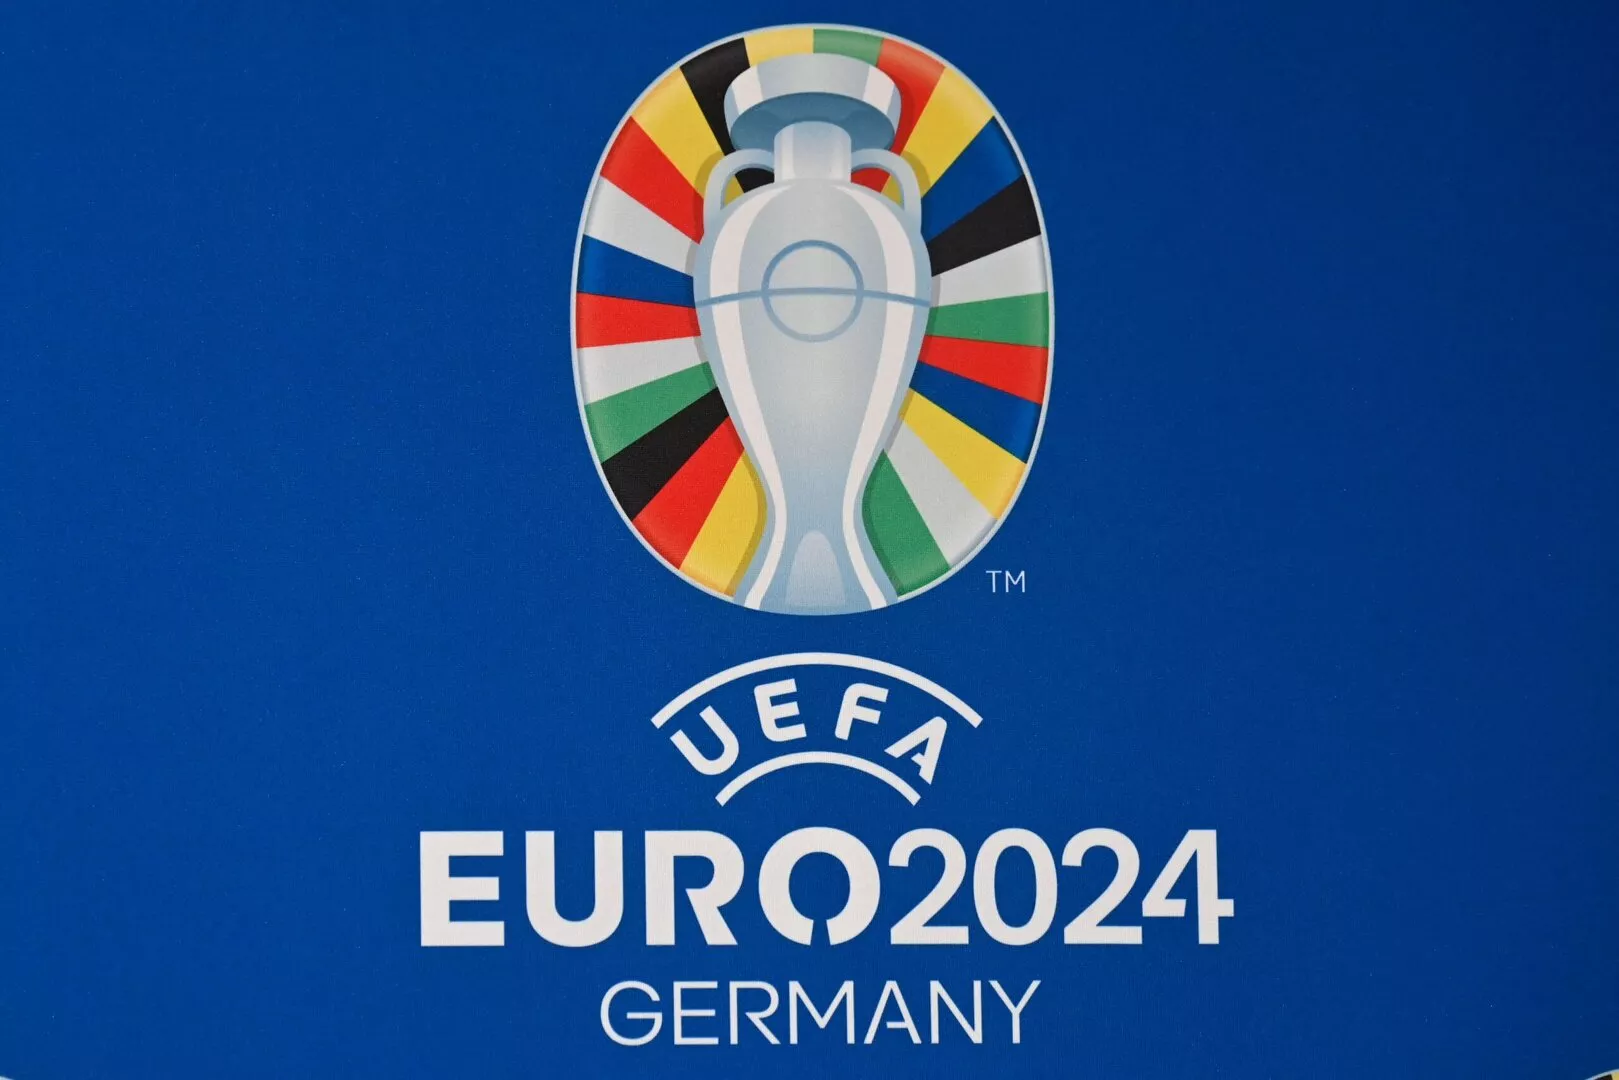 UEFA Euro 2024 Adidas match ball images leaked